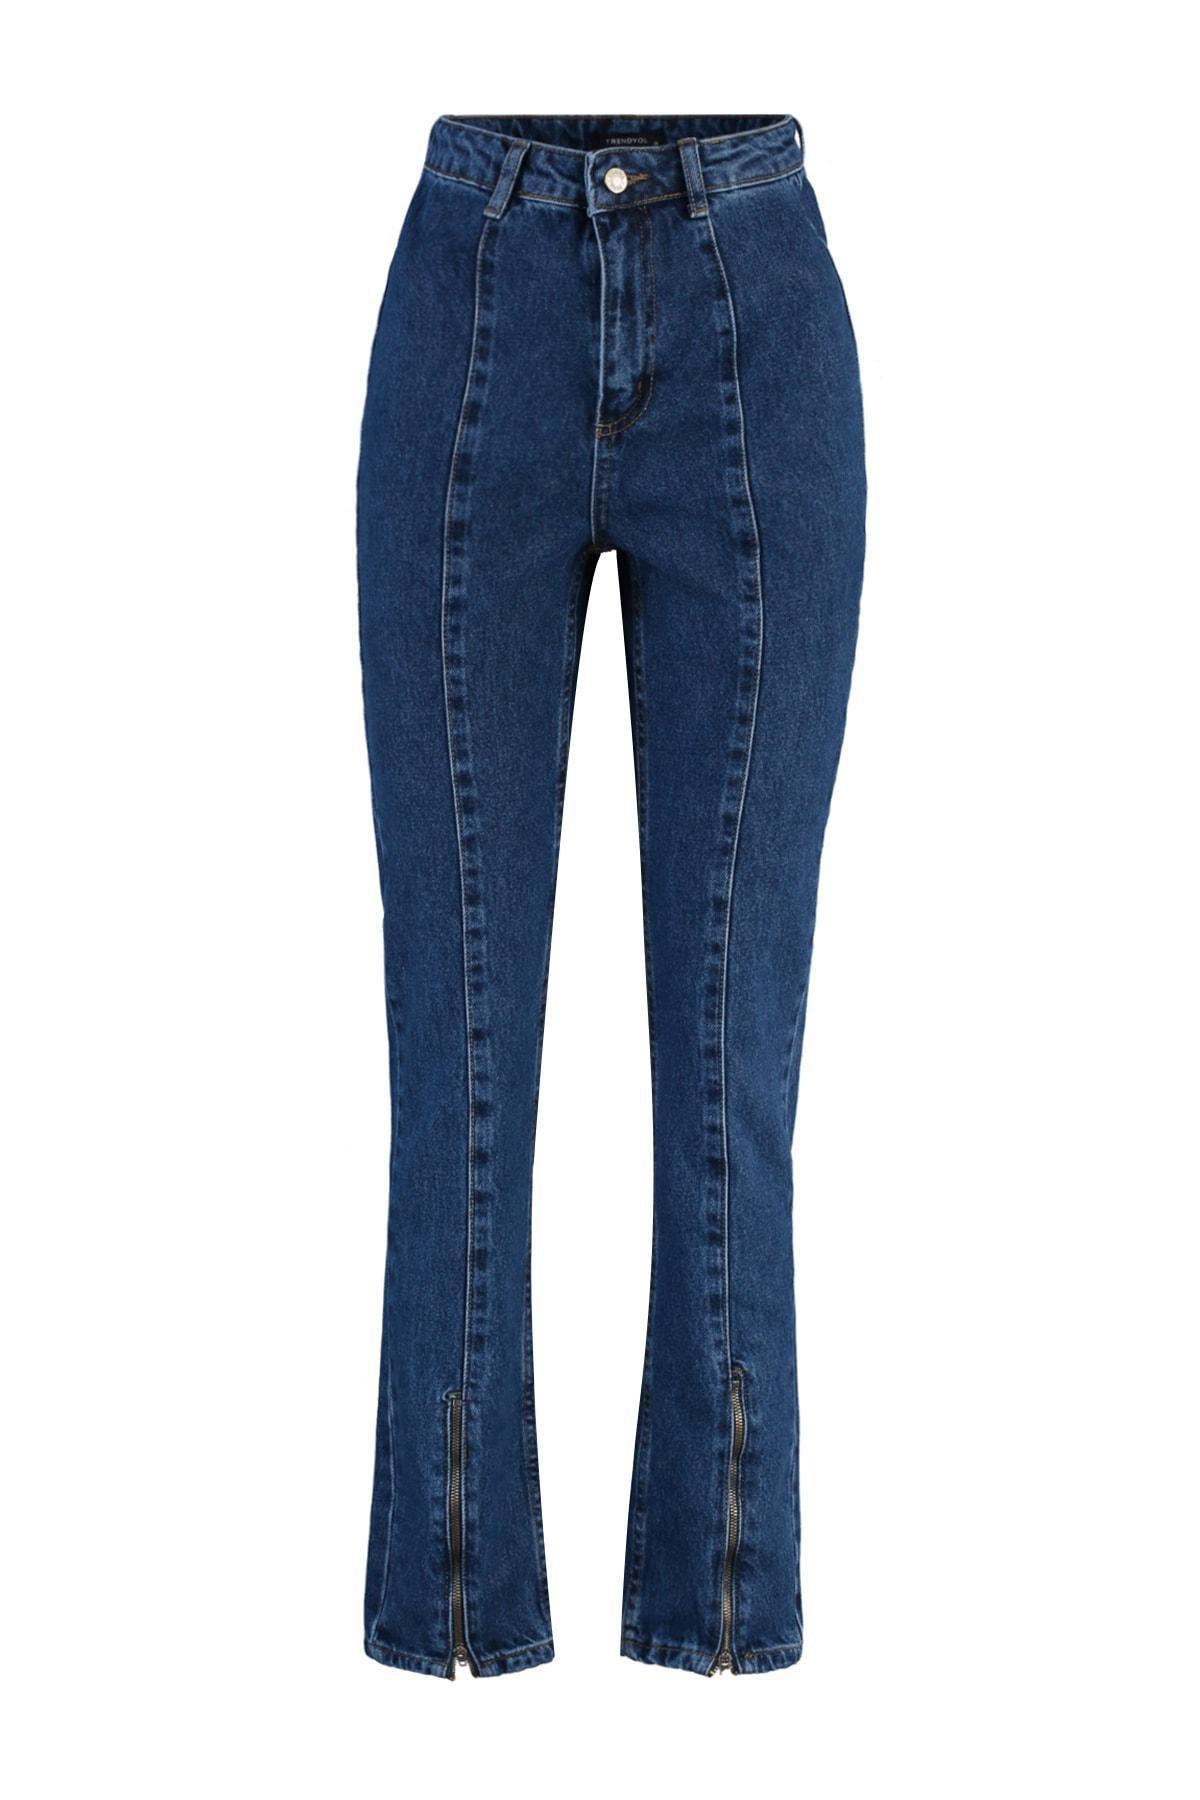 Trendyol - Blue High Waist Bootcut Jeans